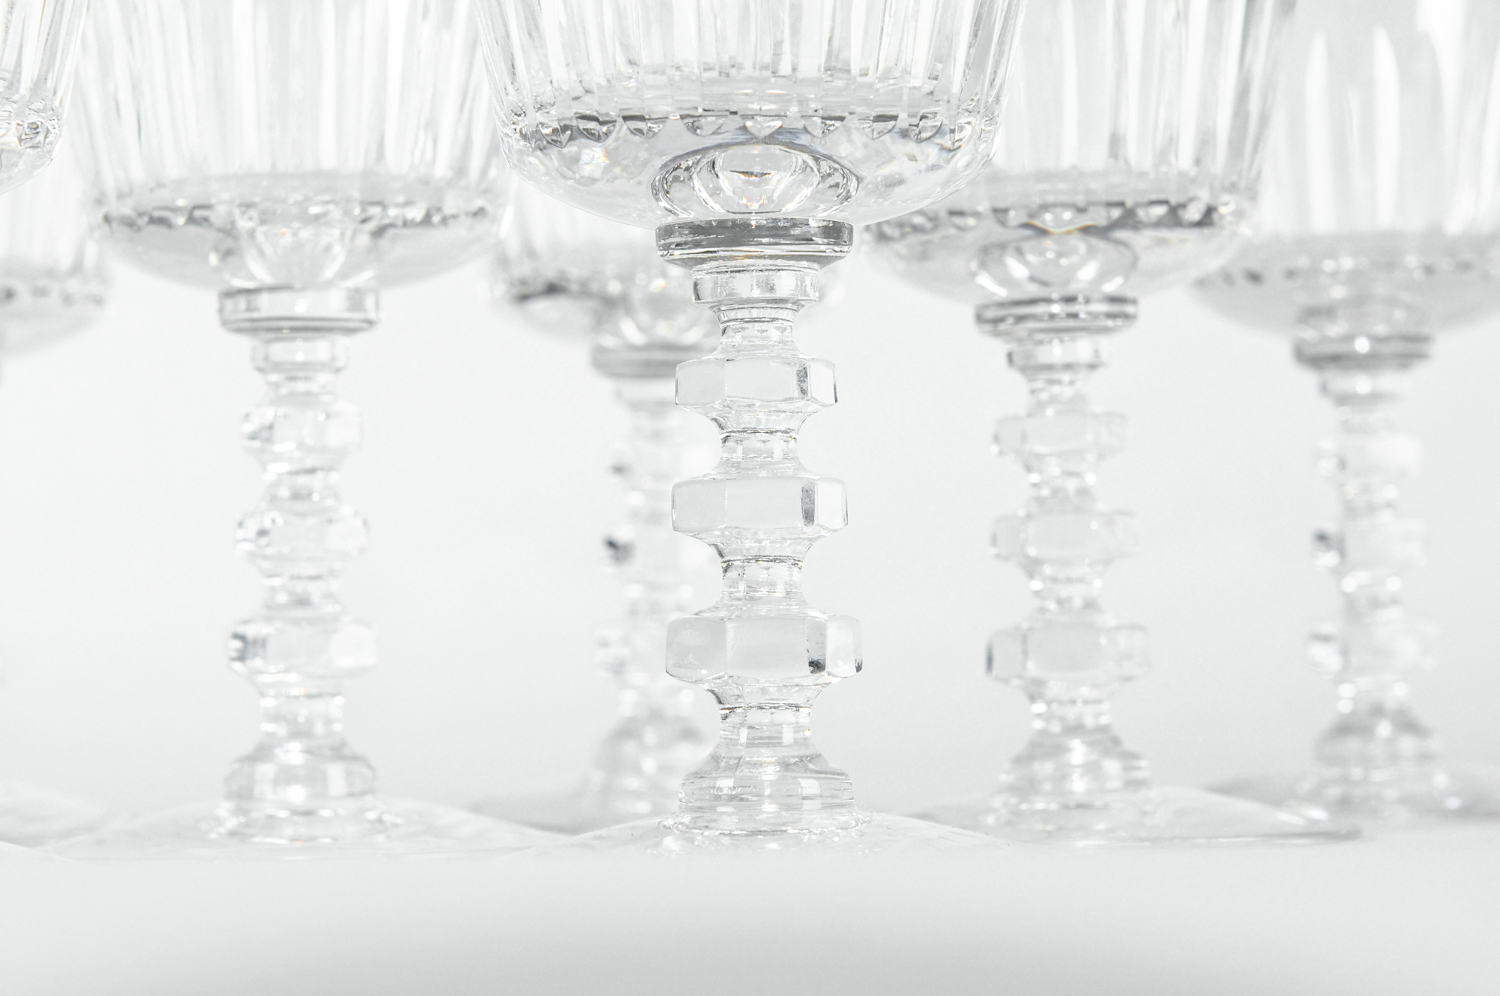 Set of 4 Baccarat Cut Crystal Glasses – Madame de la Maison